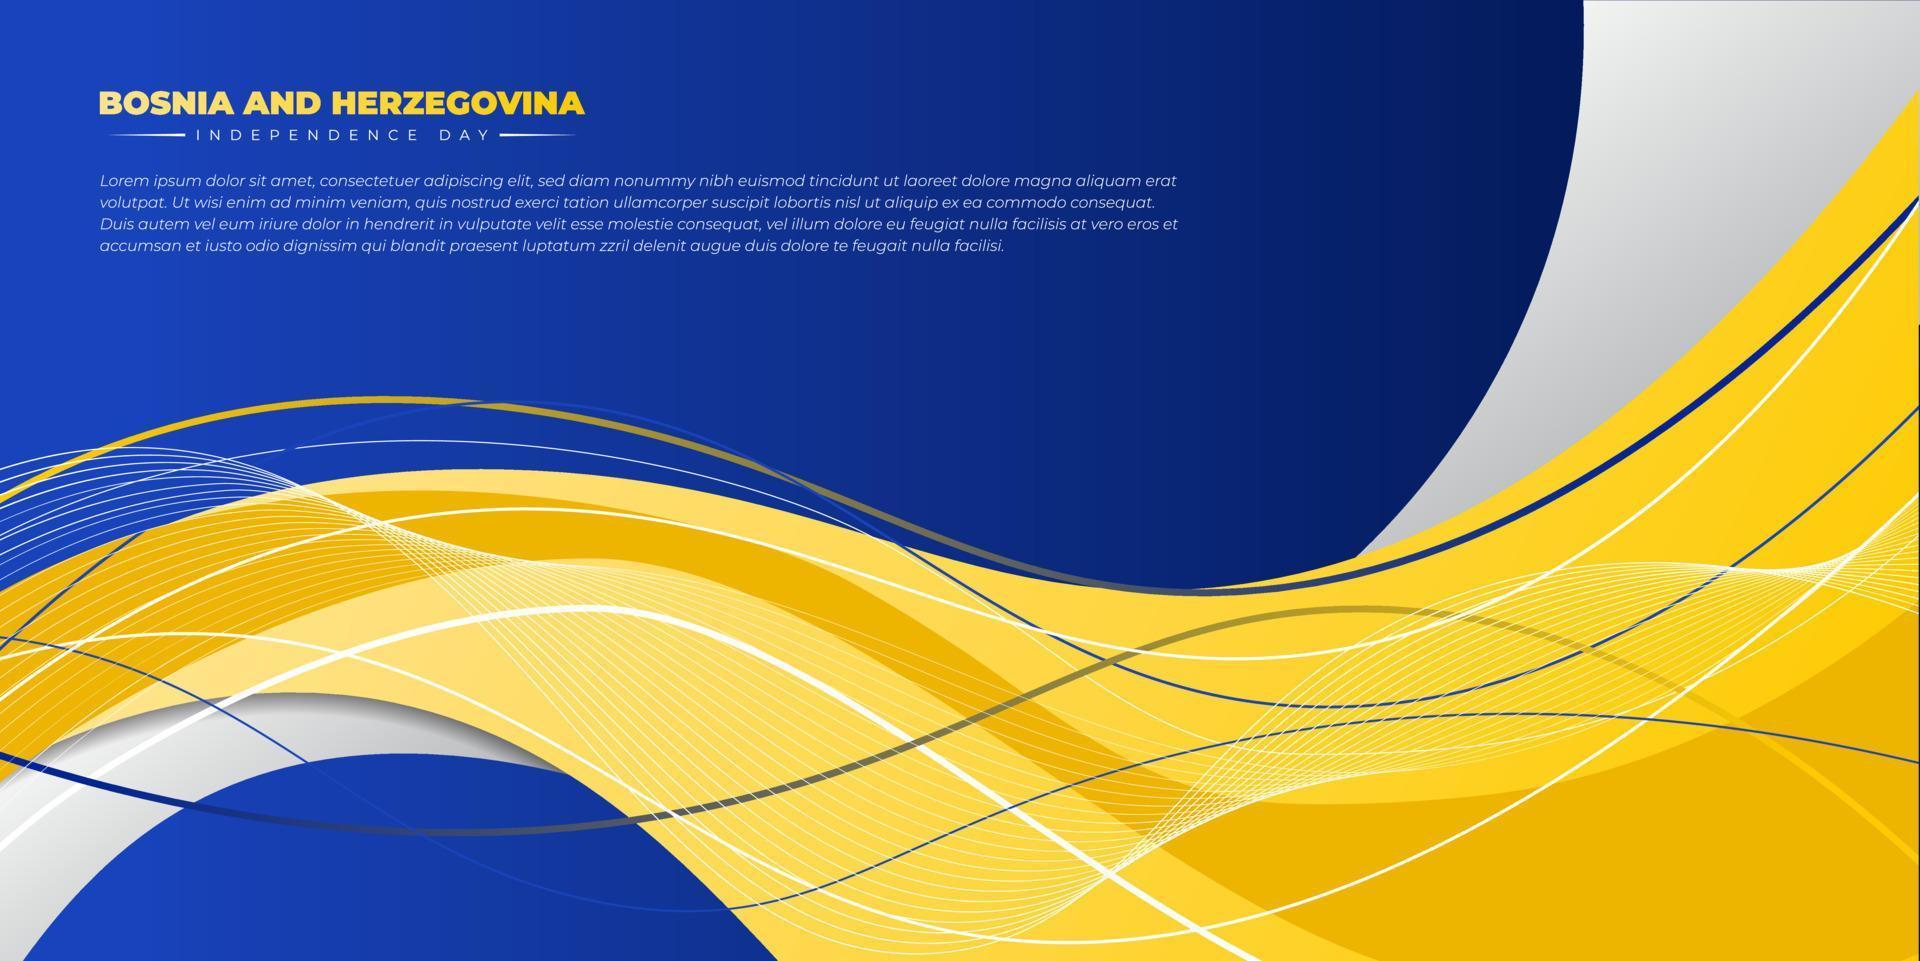 golvend geel op blauw ontwerp als achtergrond. sjabloon voor onafhankelijkheidsdag van bosnië en herzegovina. vector